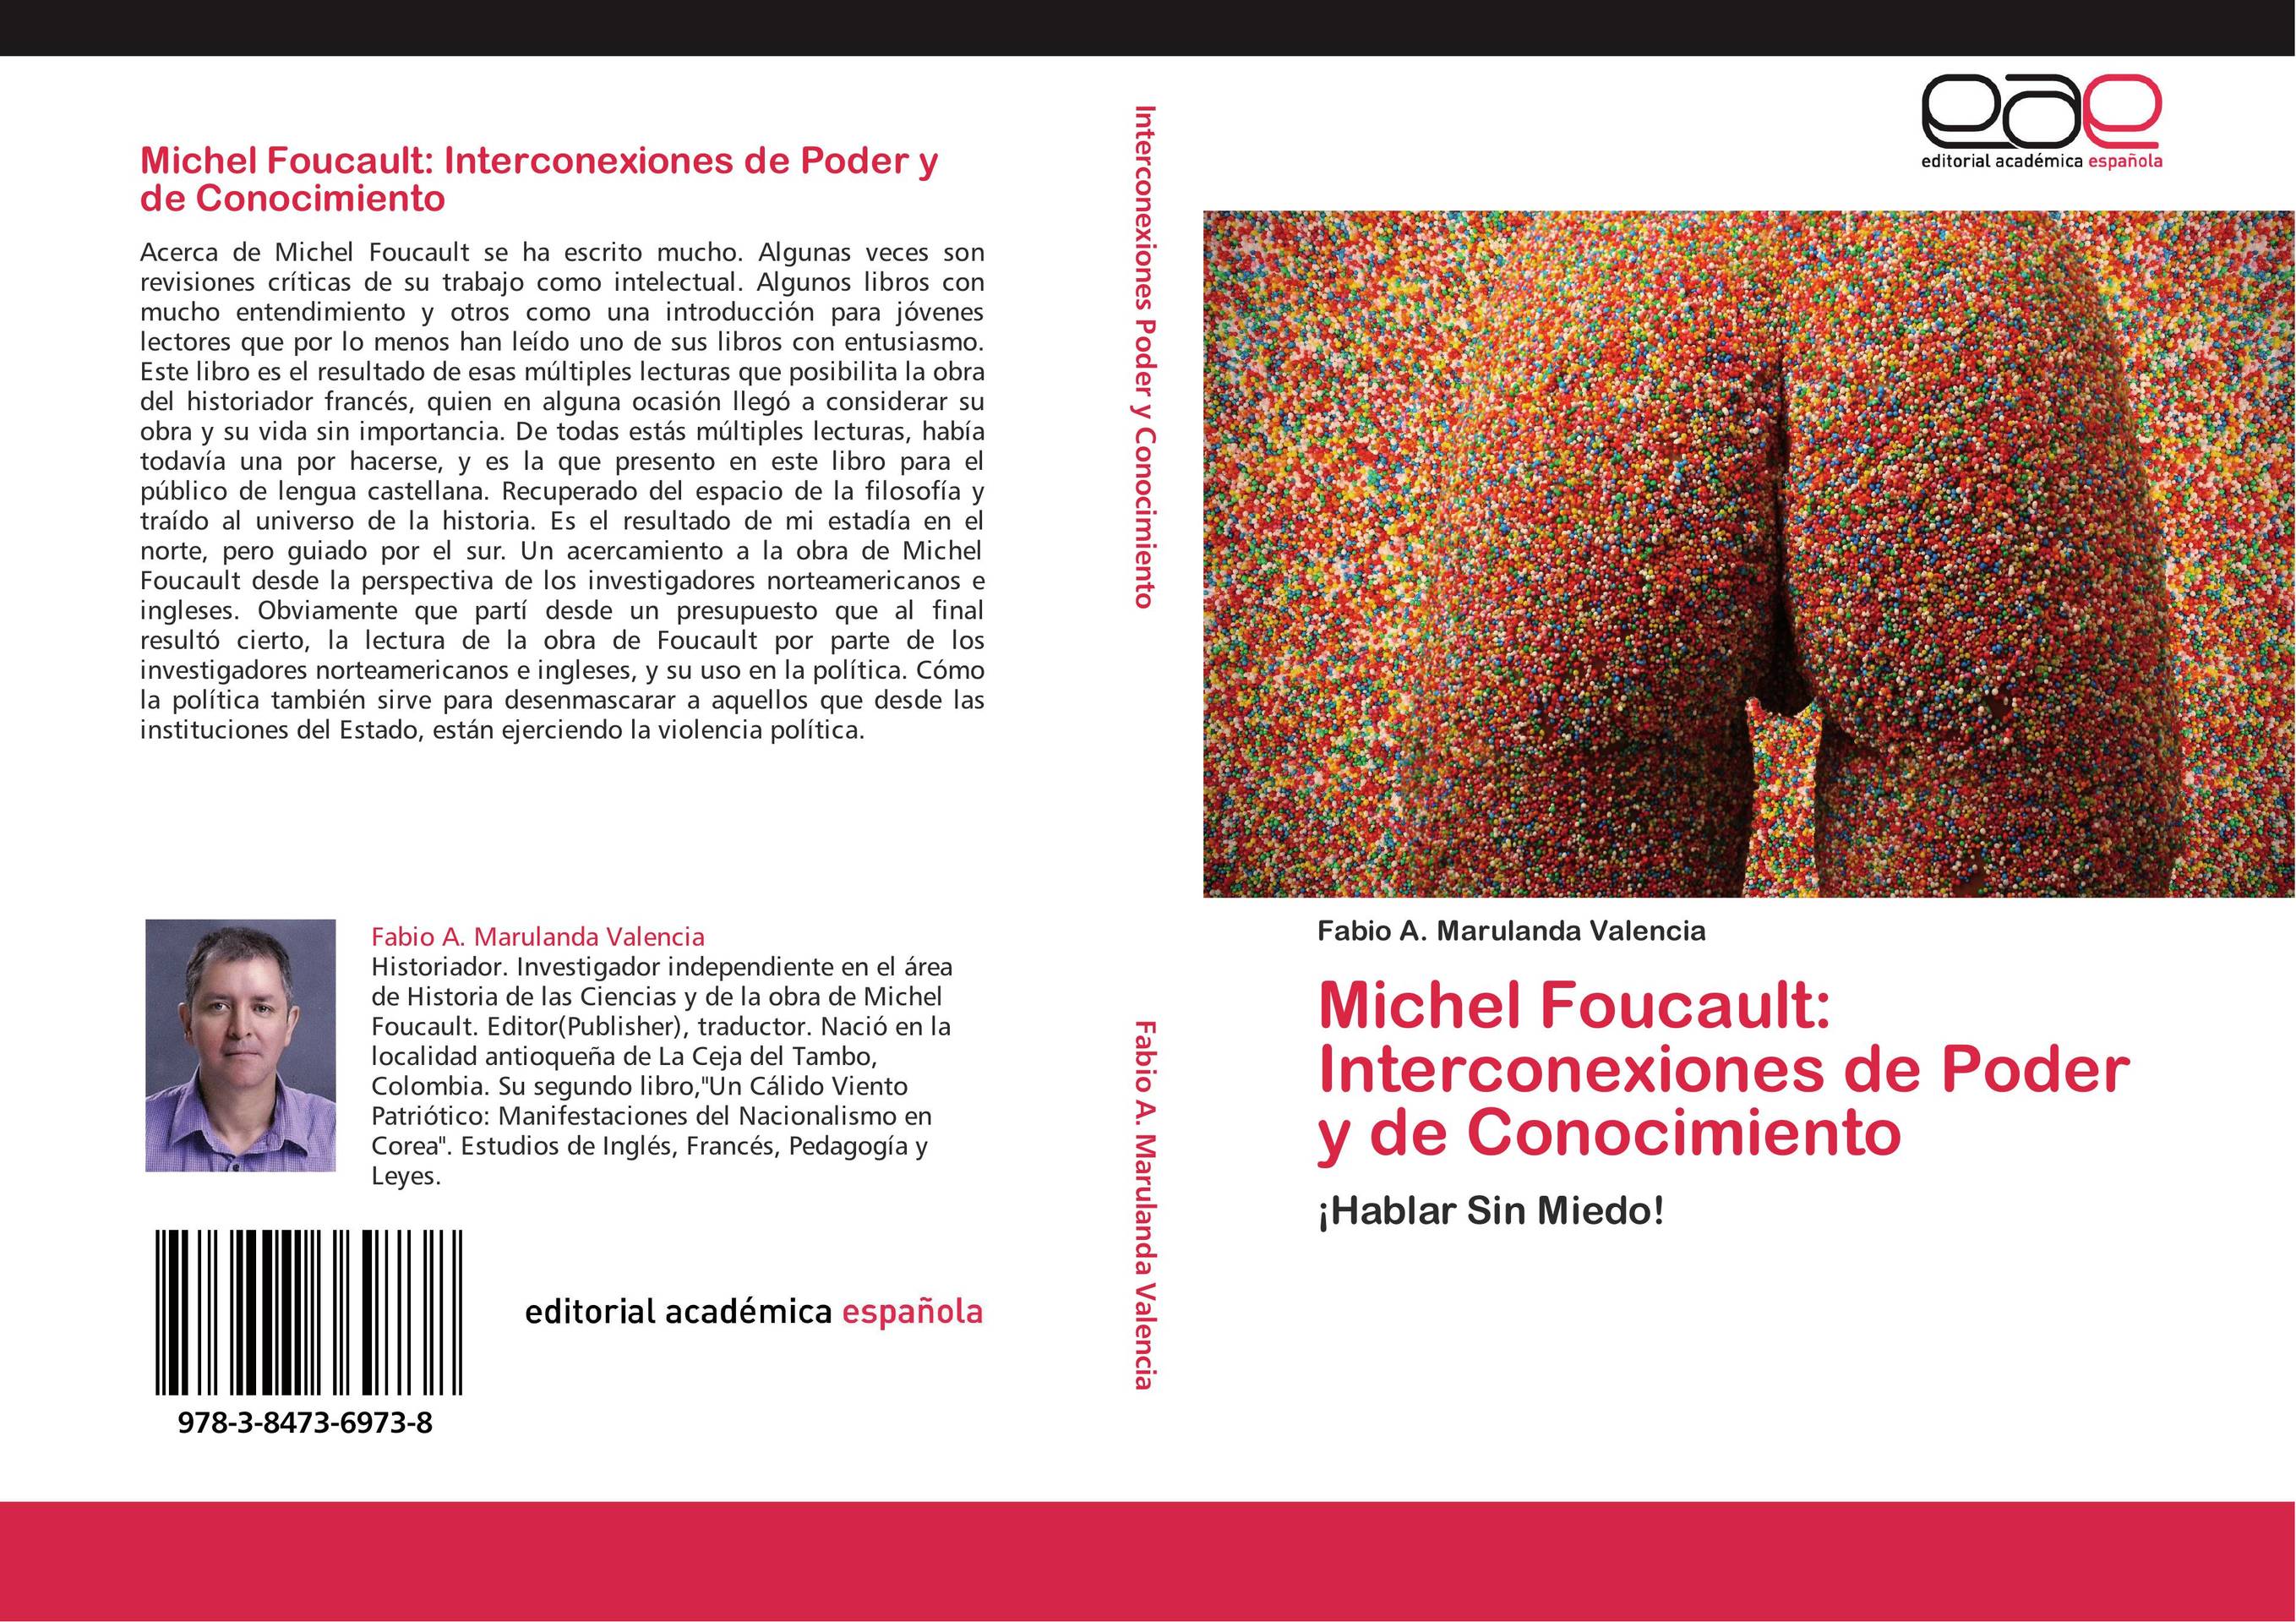 Michel Foucault: Interconexiones de Poder y de Conocimiento